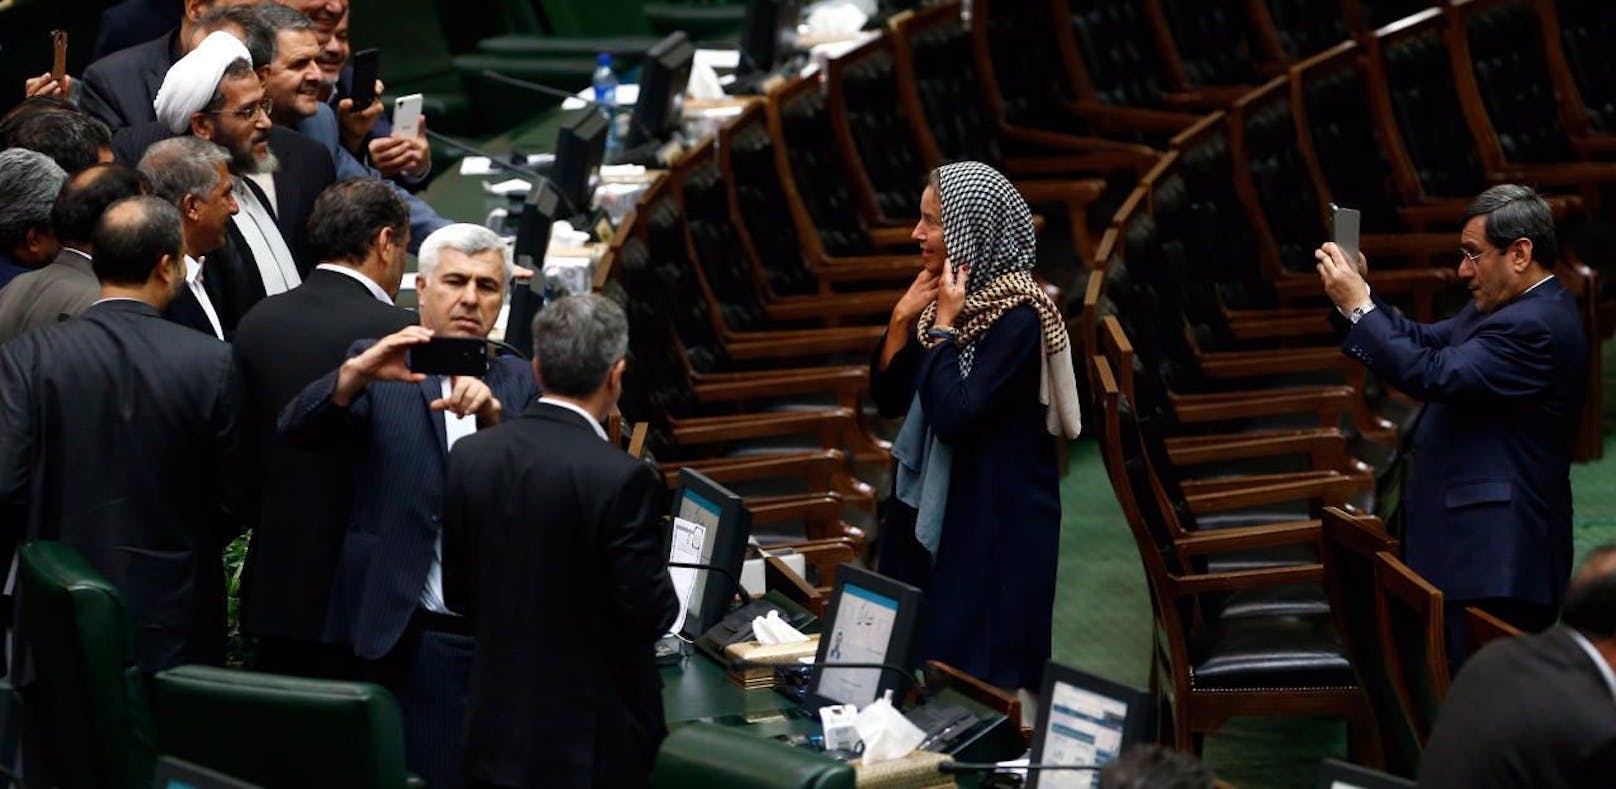 Die iranischen abgeordneten wollten ein Bild von oder mit Federica Mogherini haben.